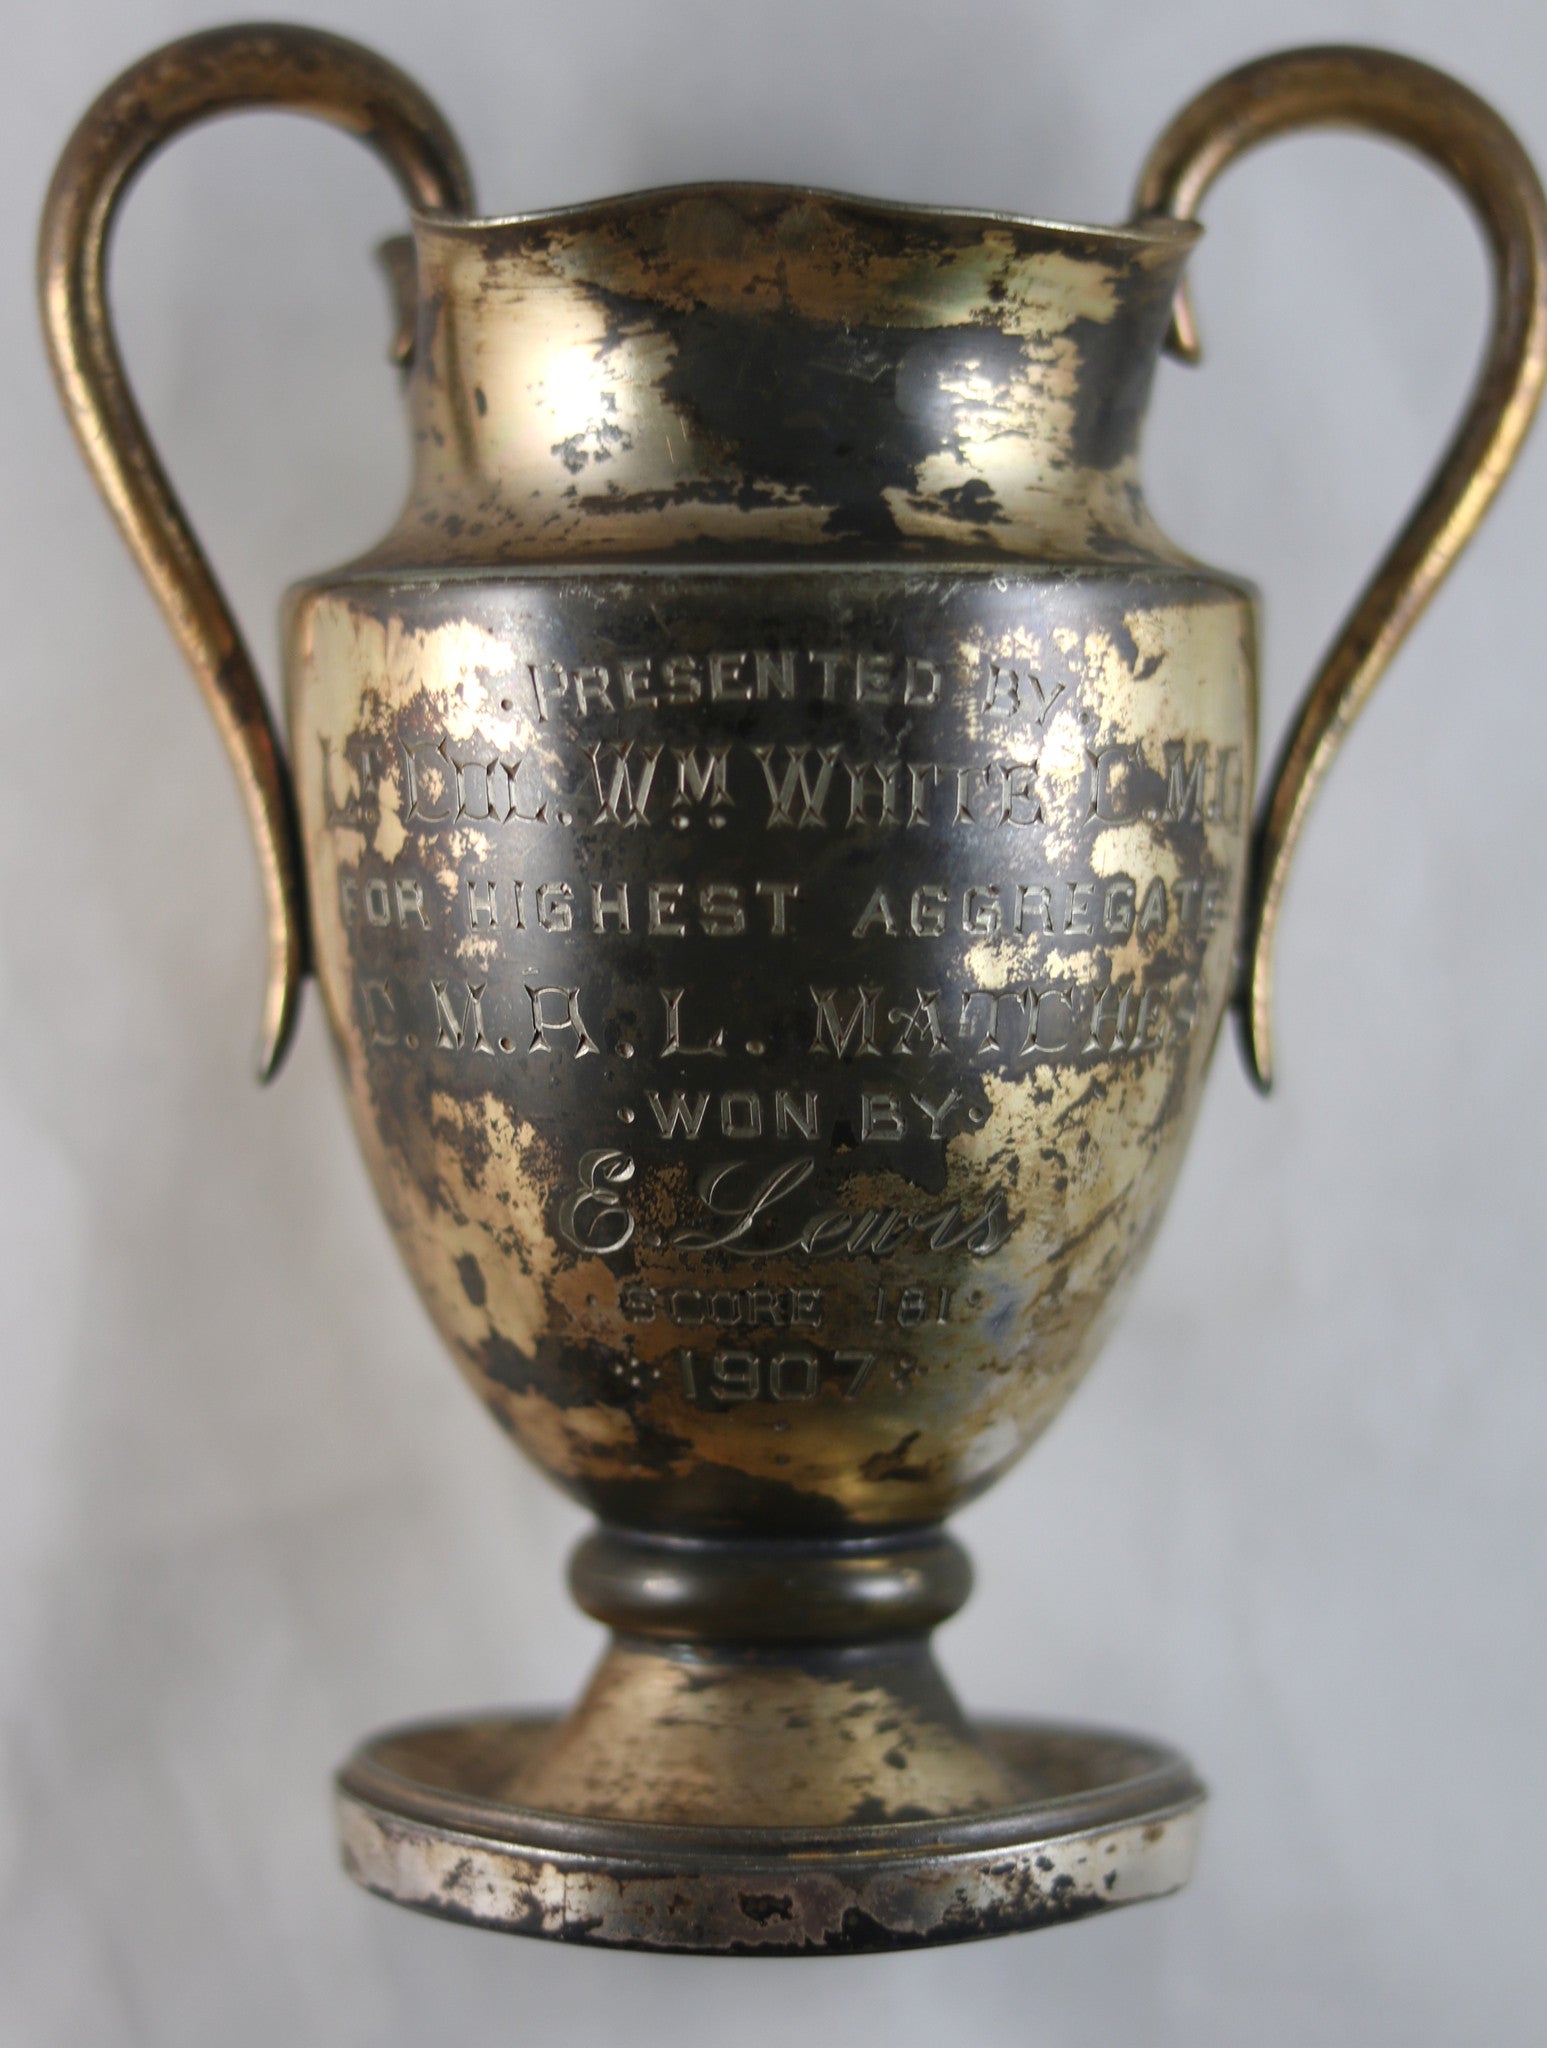 1907 Canada sports trophy C.M.A.L. Matches